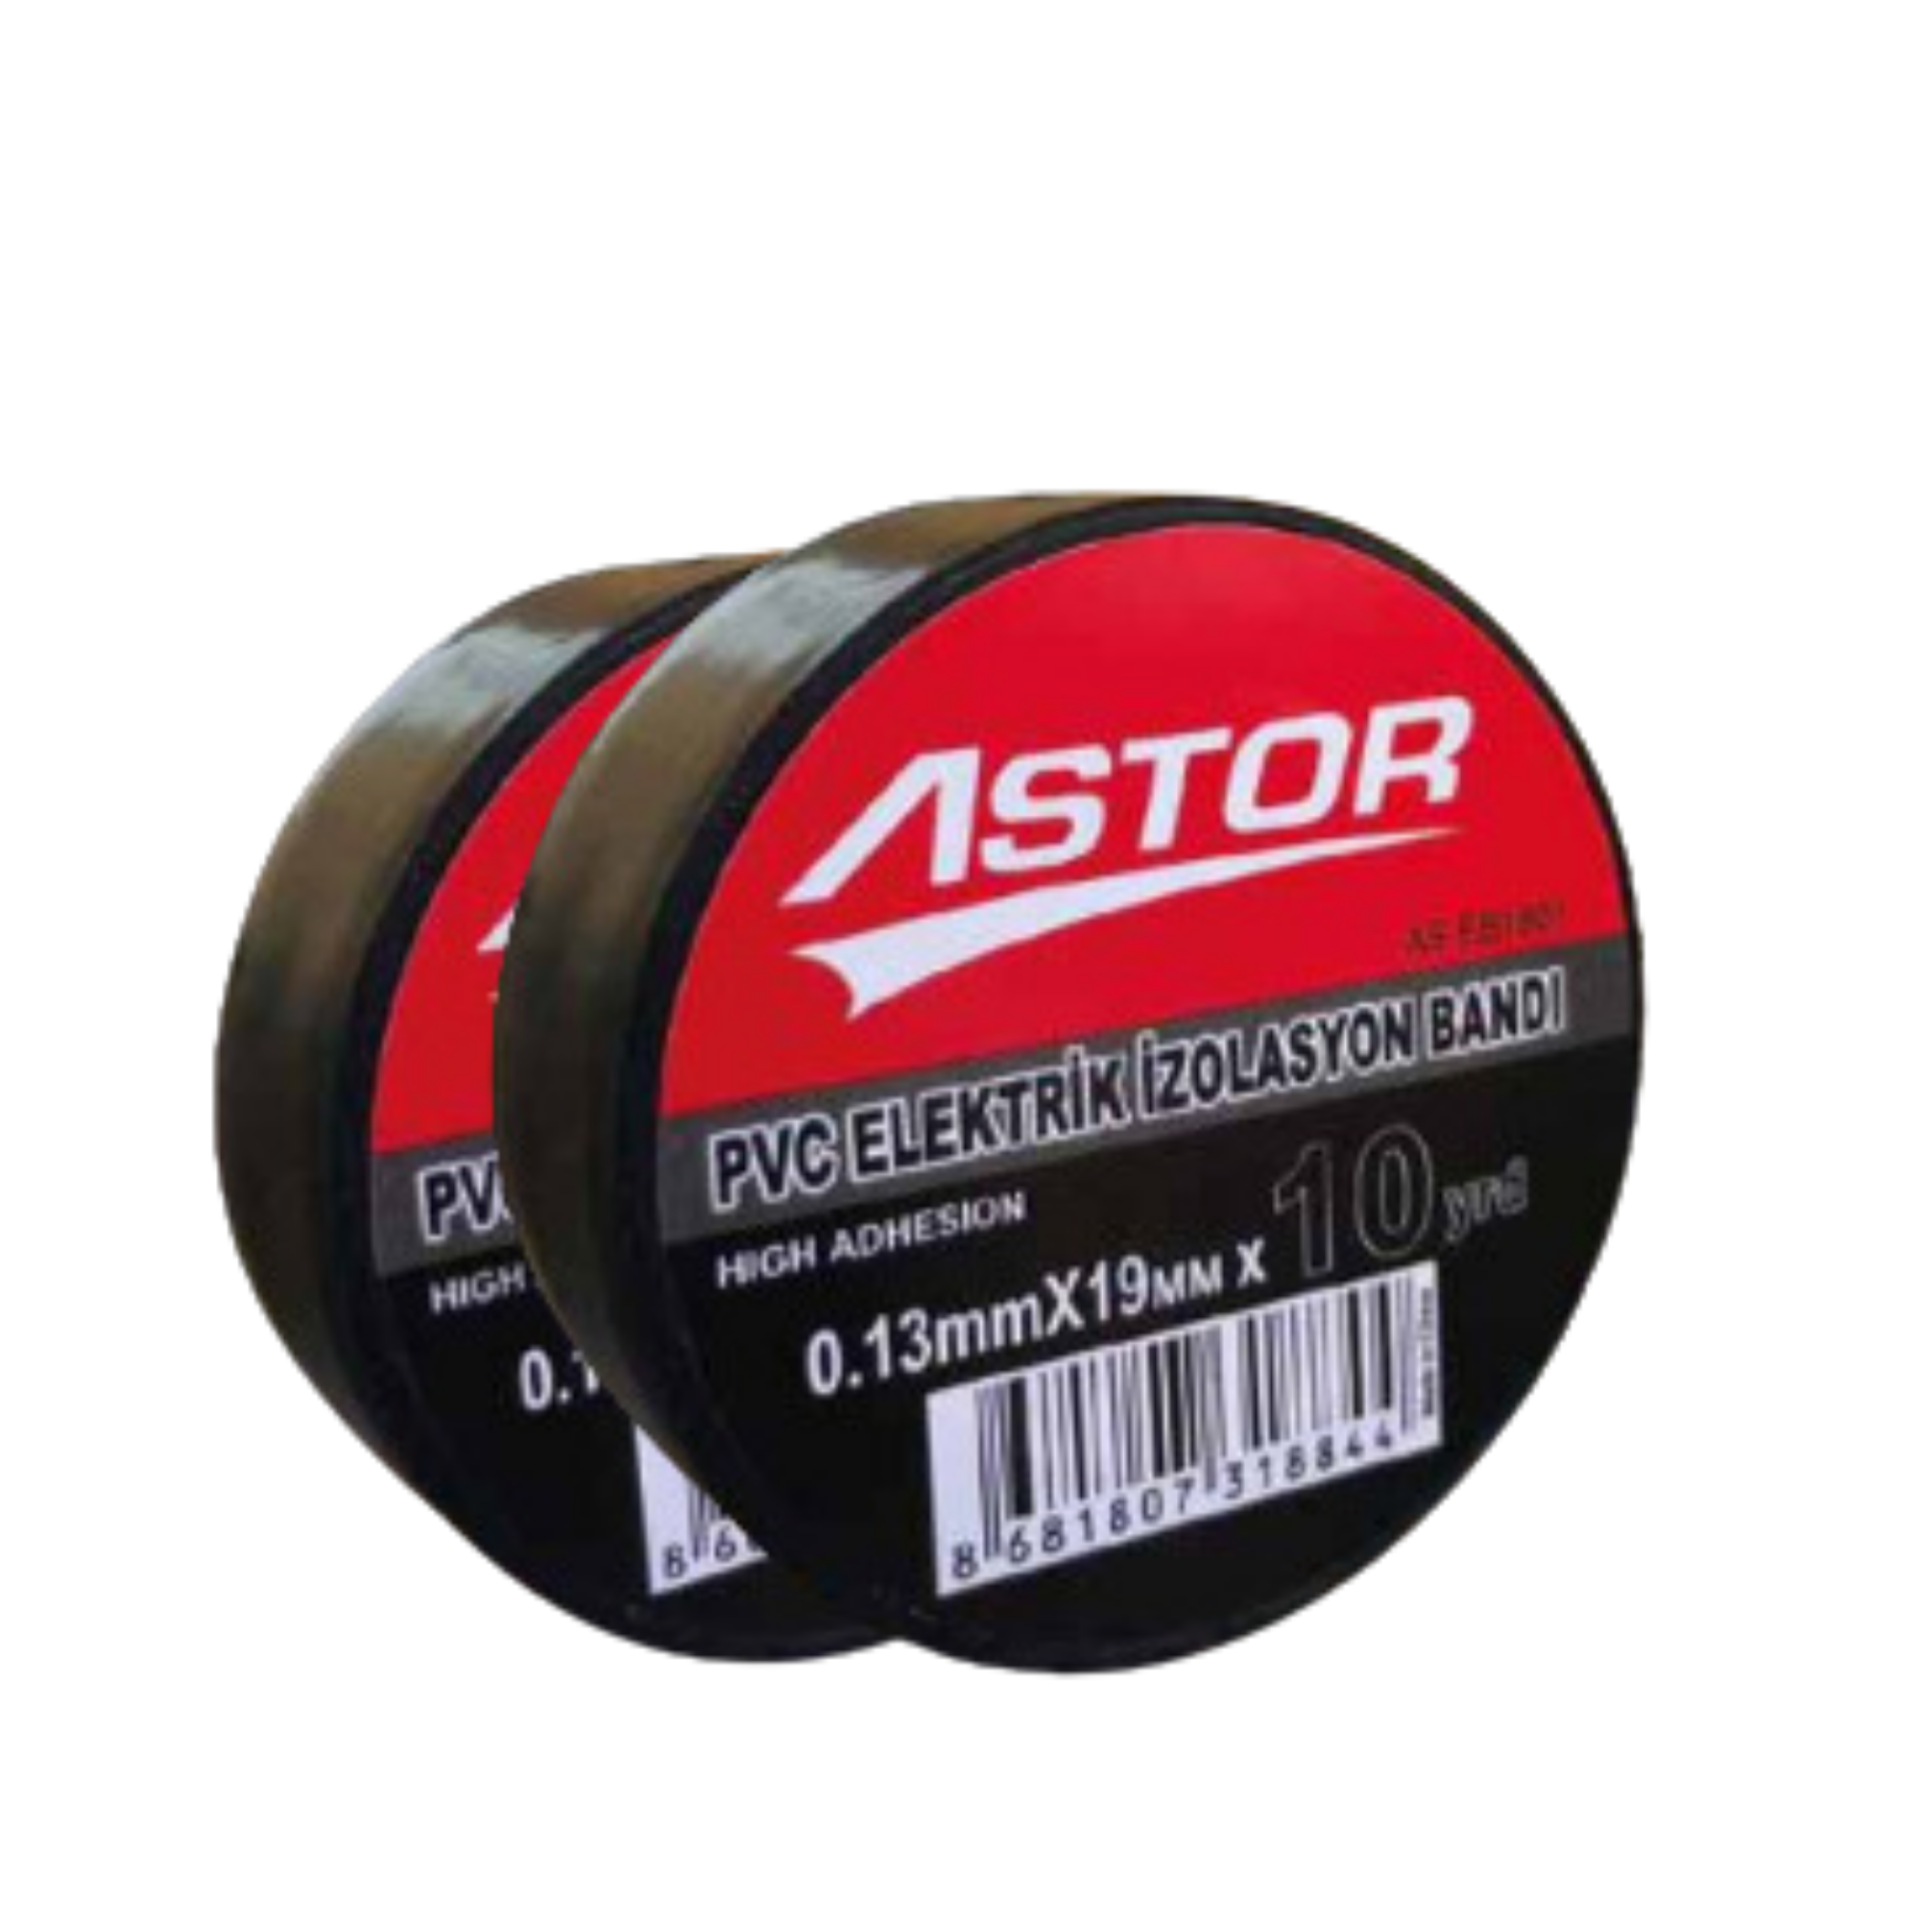 Astor PVC Elektrik İzolasyon Bandı (10 Adet)